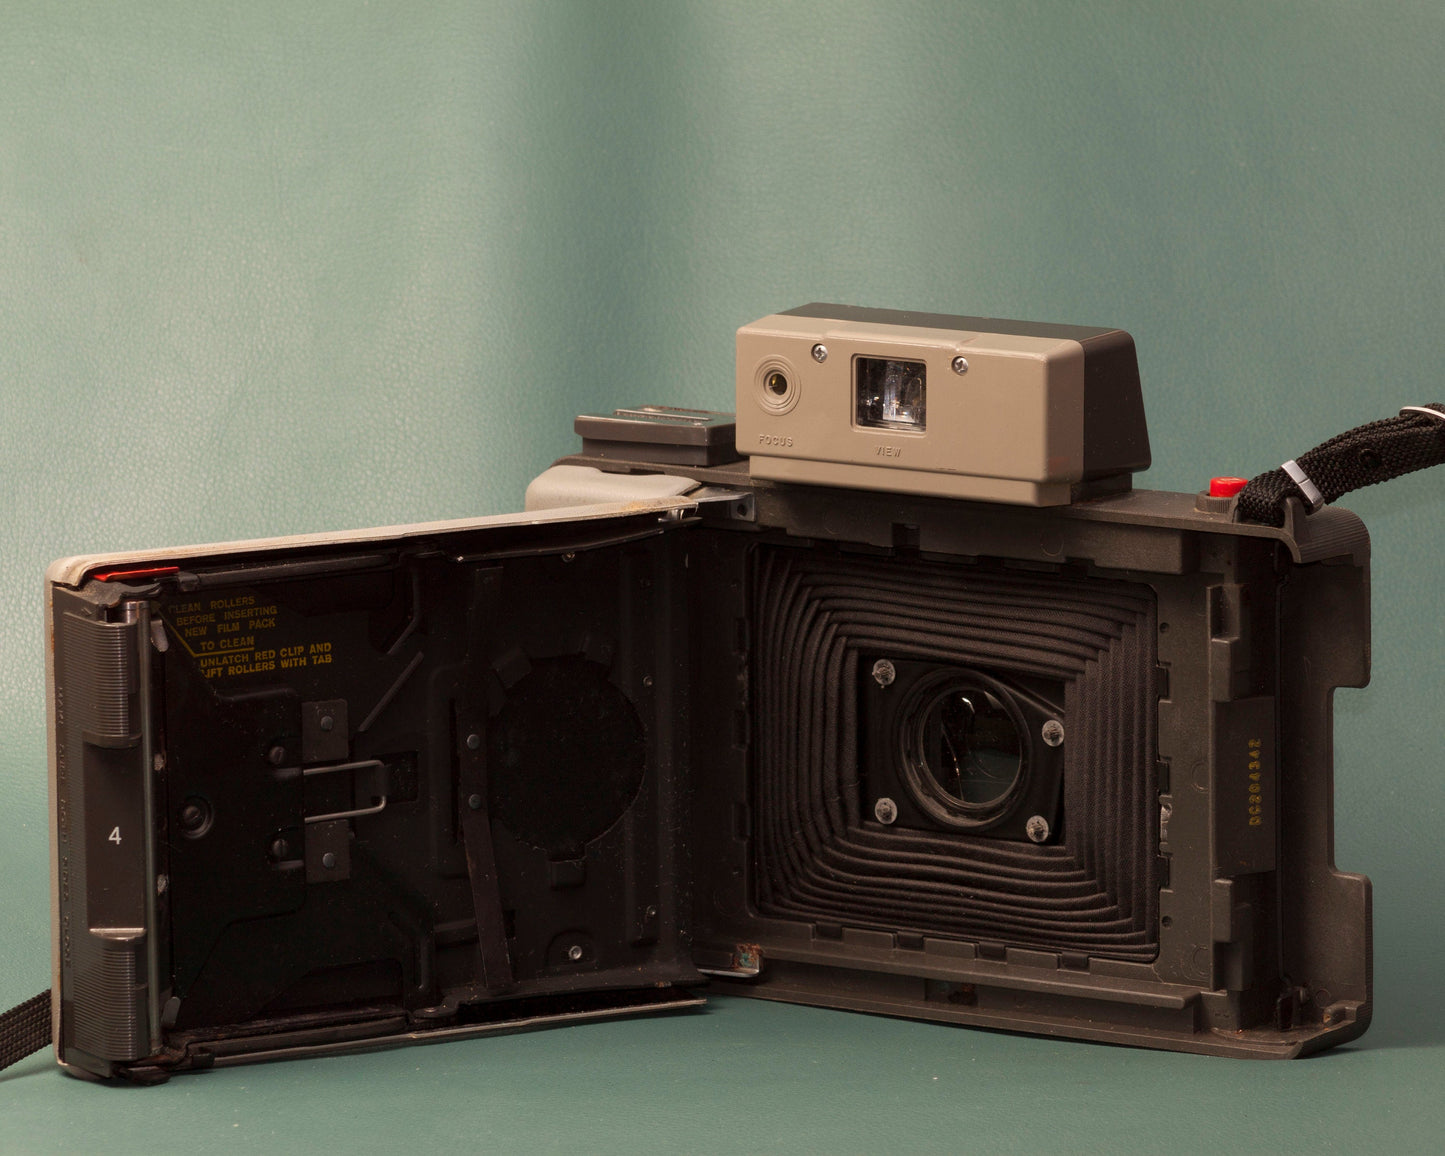 Polaroid 420 Land Camera